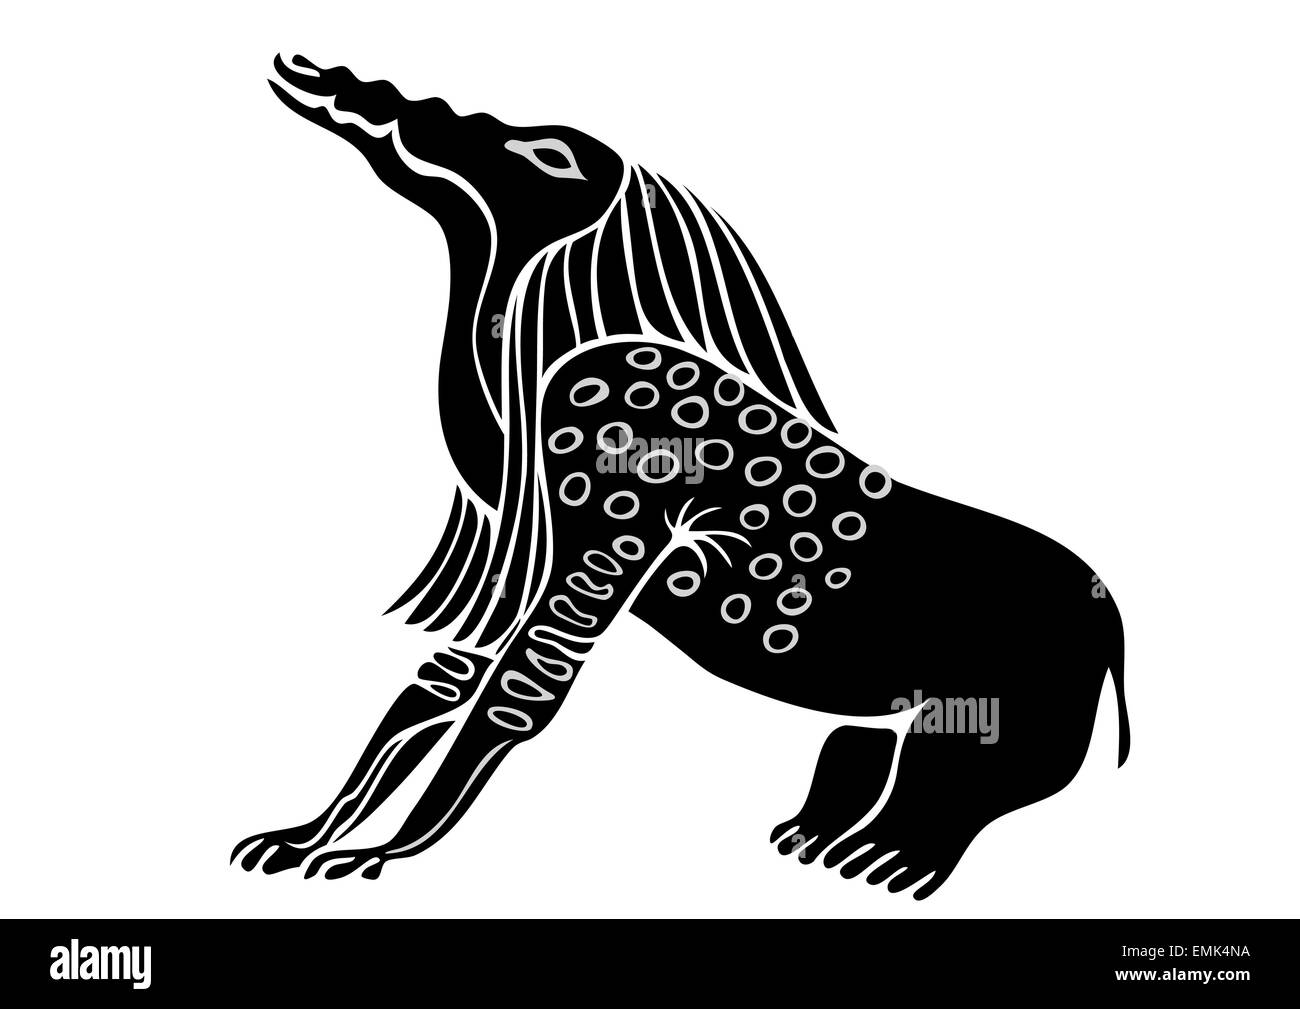 Immagine del demone egiziano - osso Eater - vettore Illustrazione Vettoriale